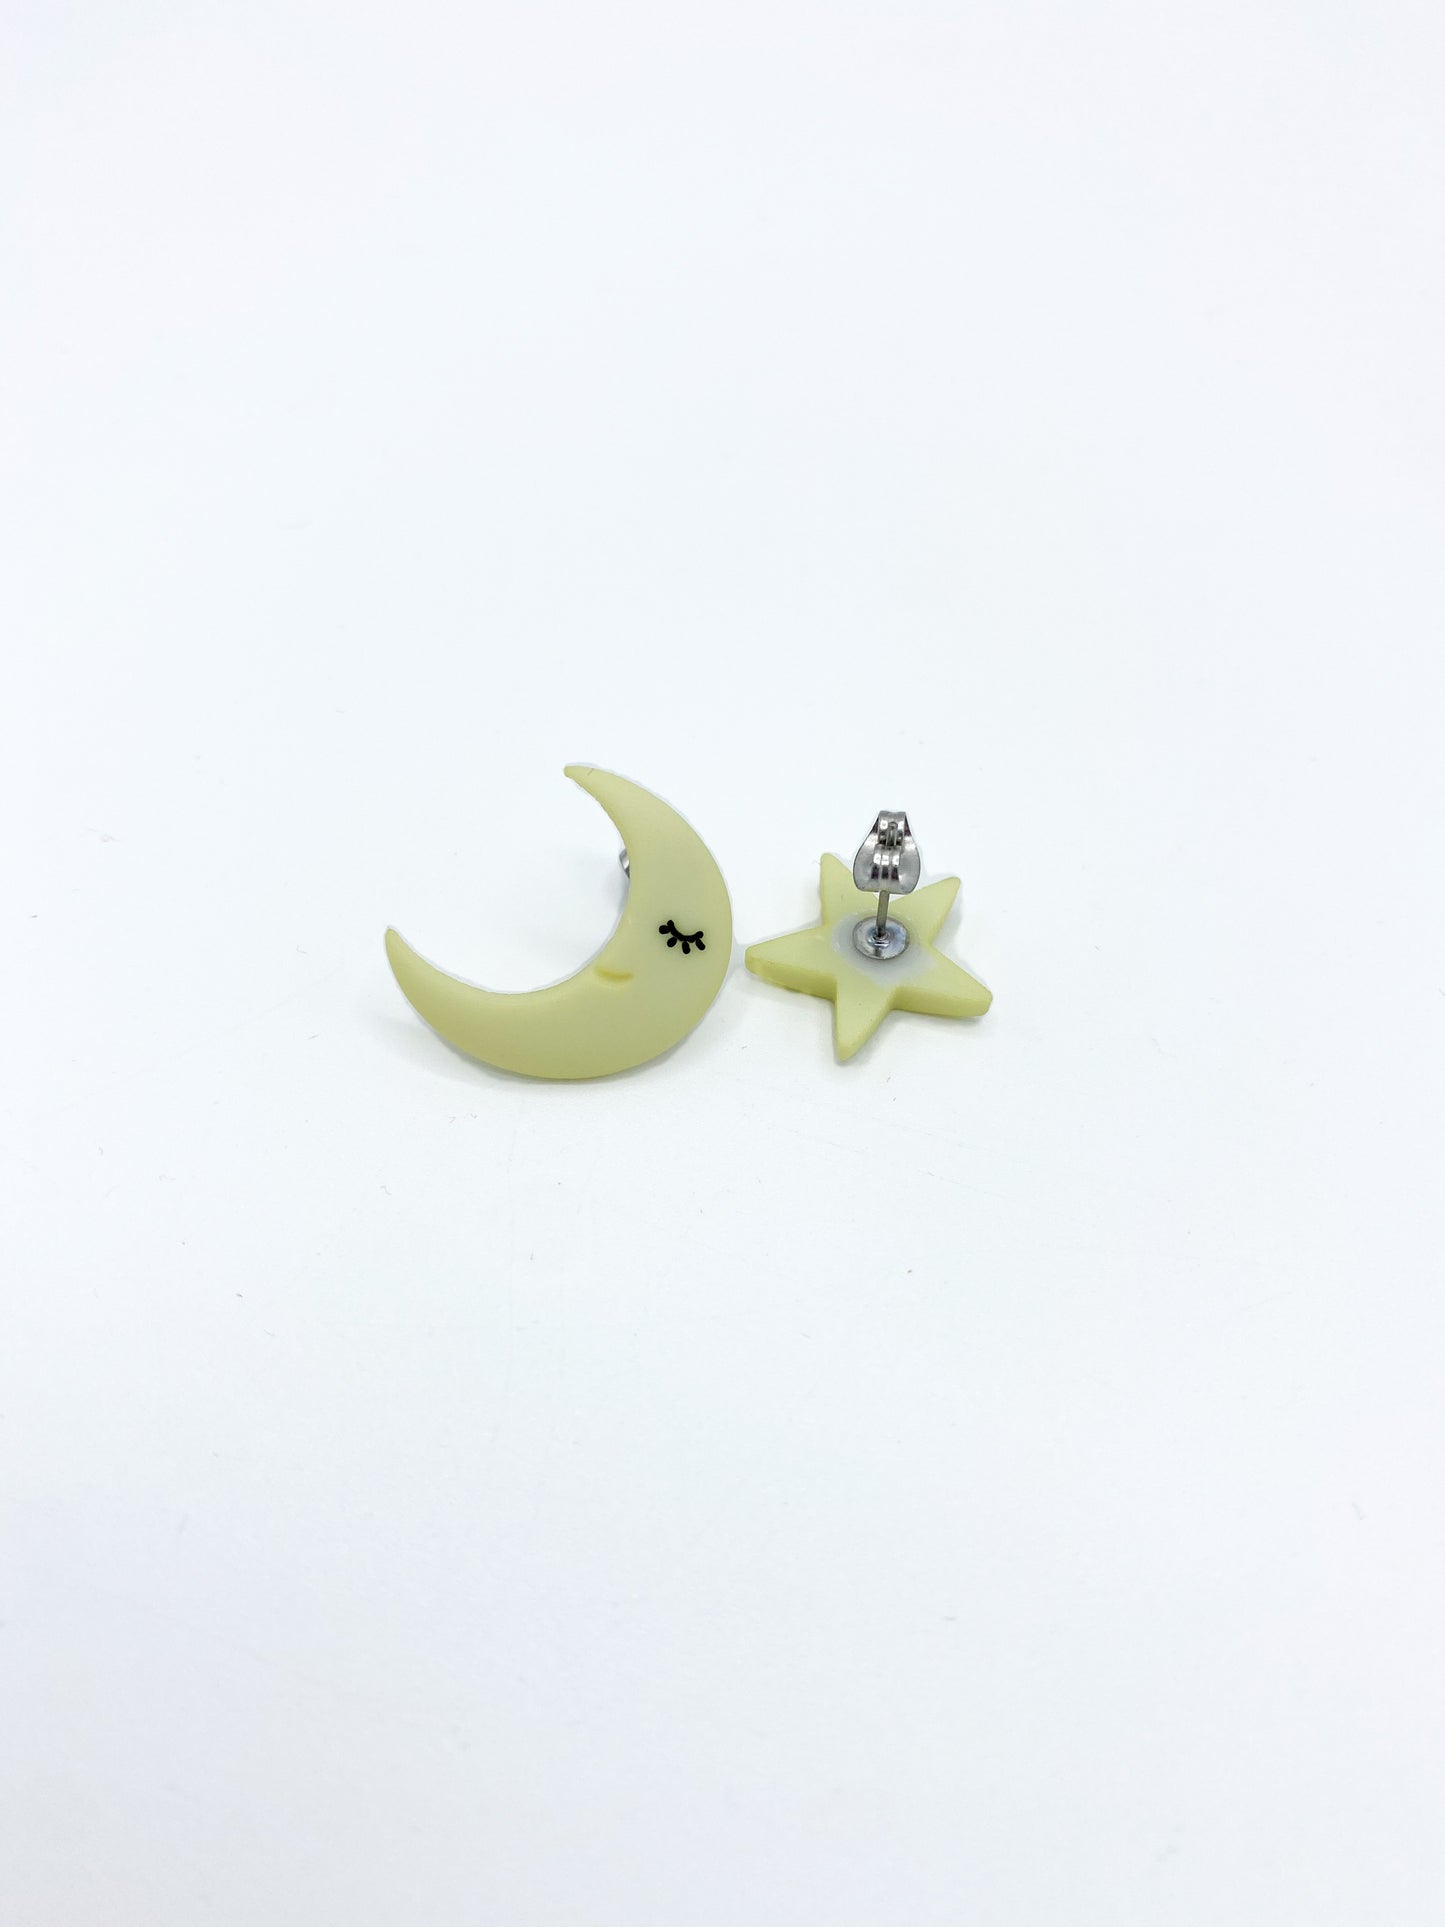 Moon Earrings Stat earrings Moon and Star earrings